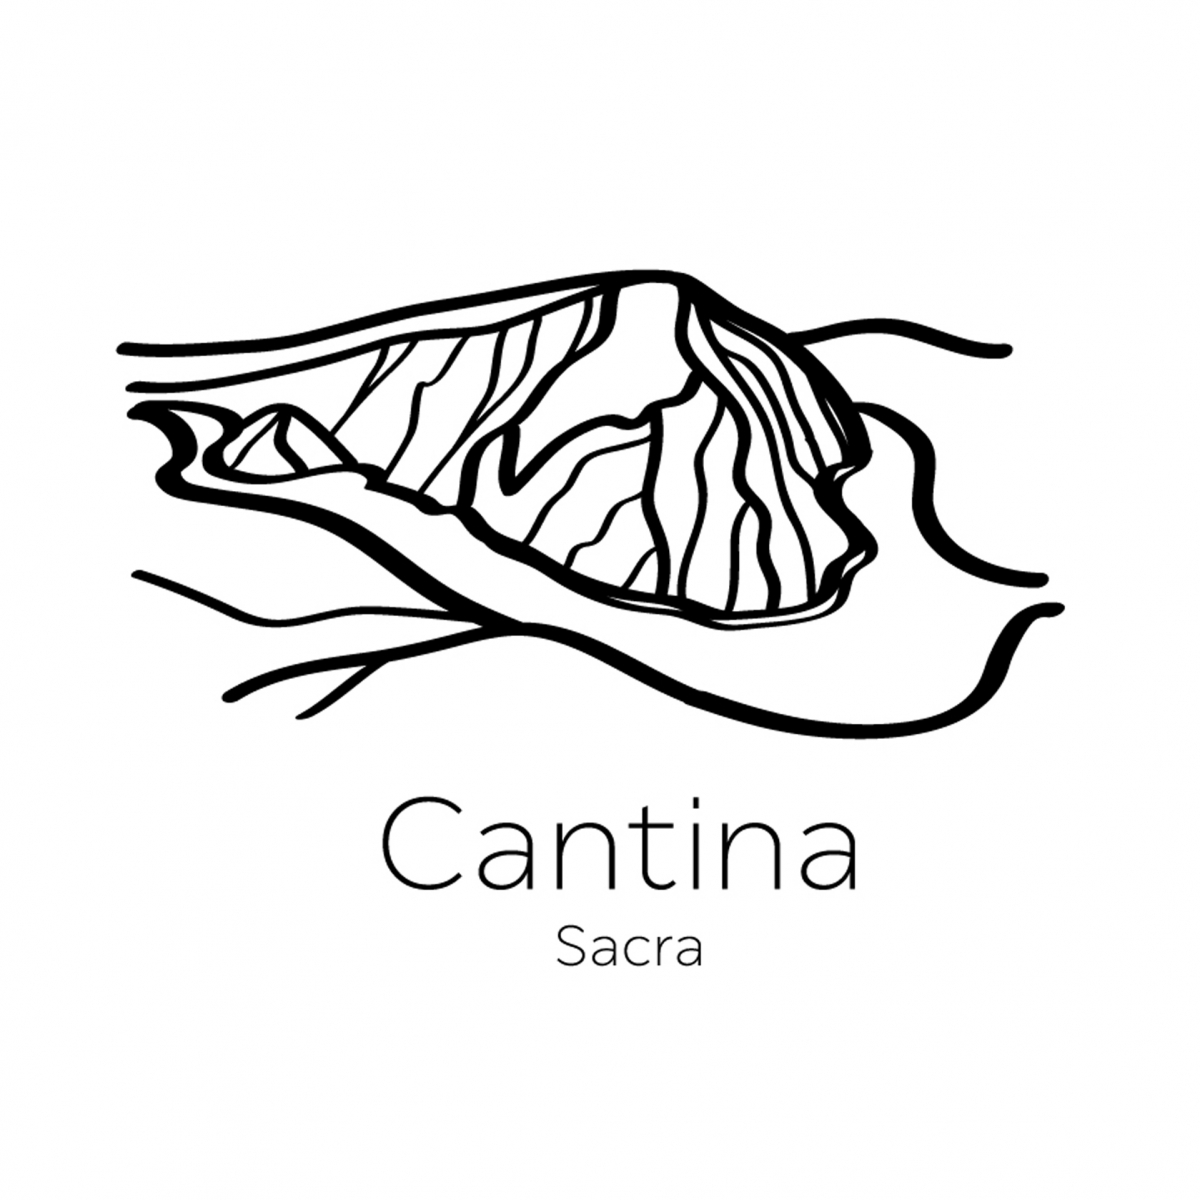 Cantina Sacra